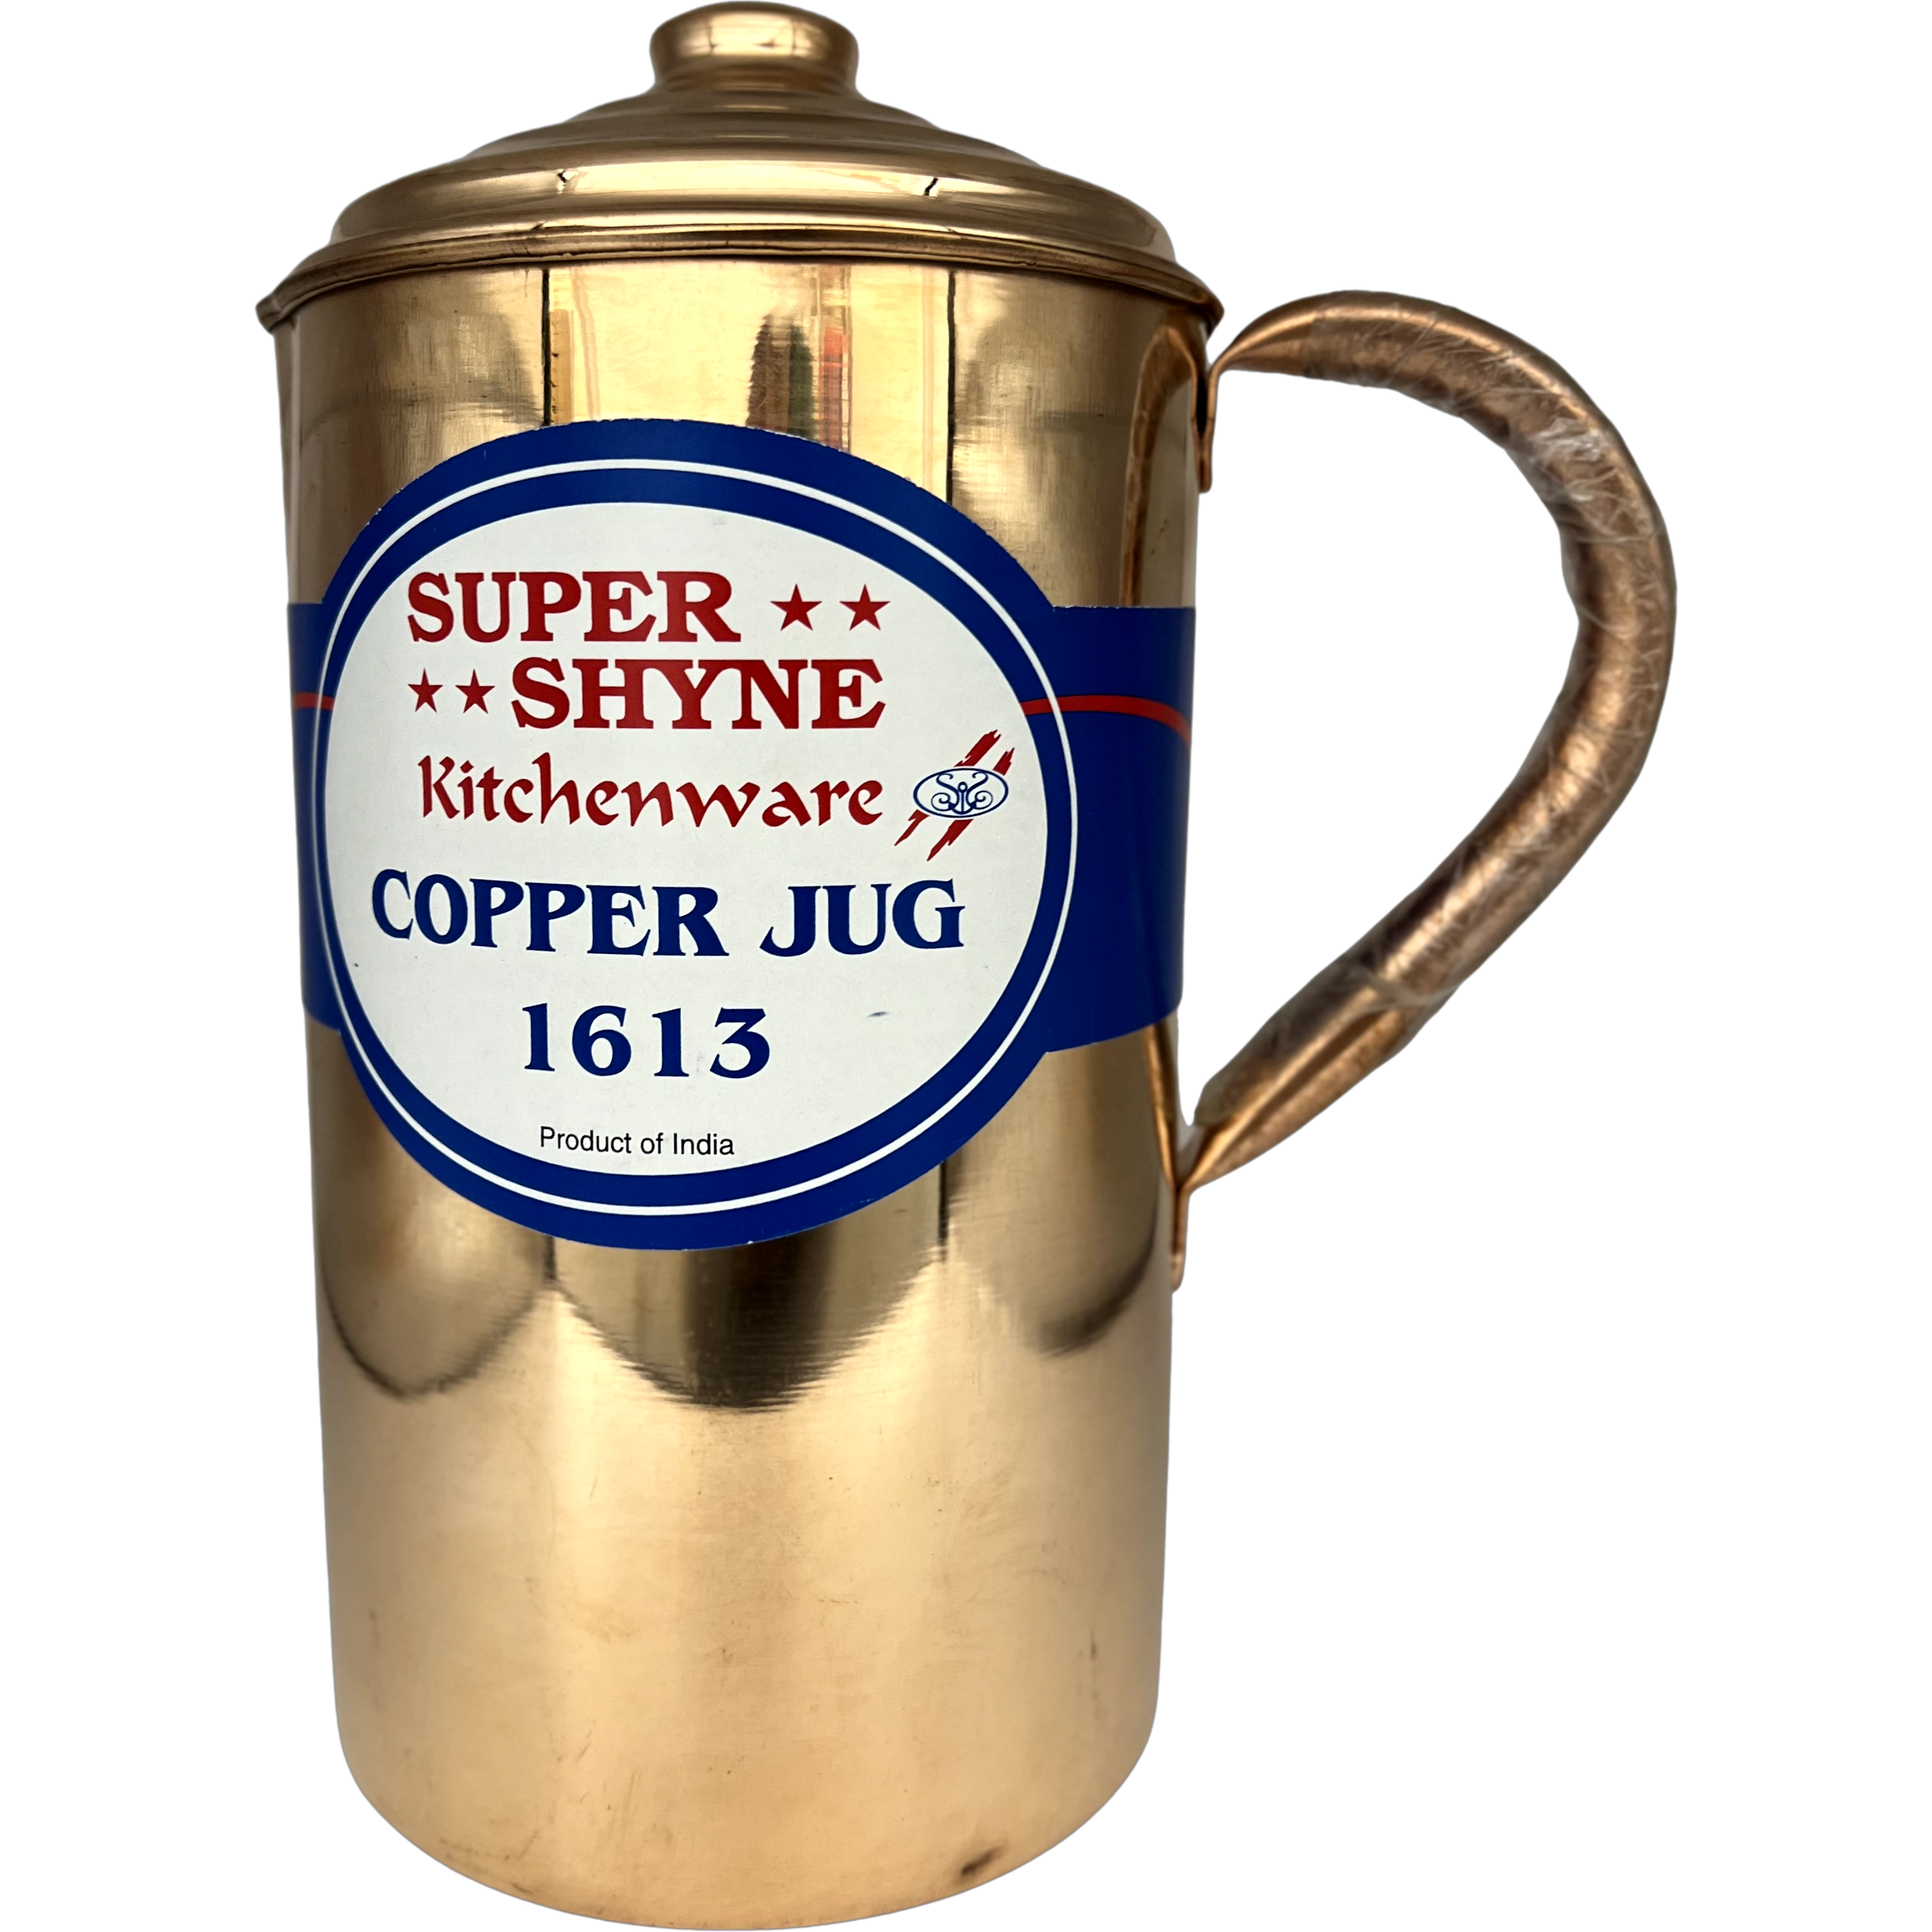 Case of 1 - Super Shyne Copper Jug